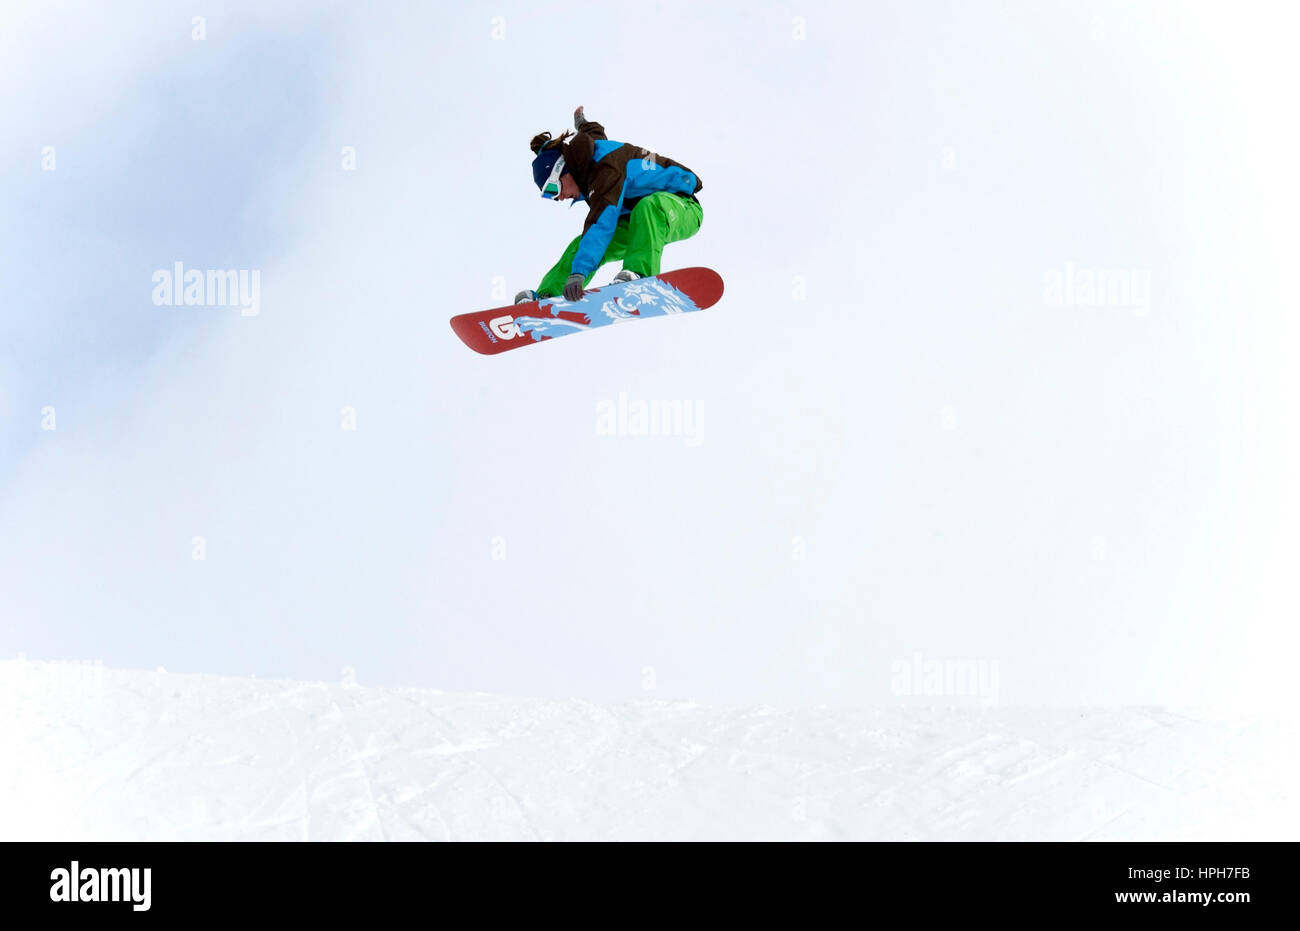 Snowboarder im Sprung - snowboarder jumping Stock Photo